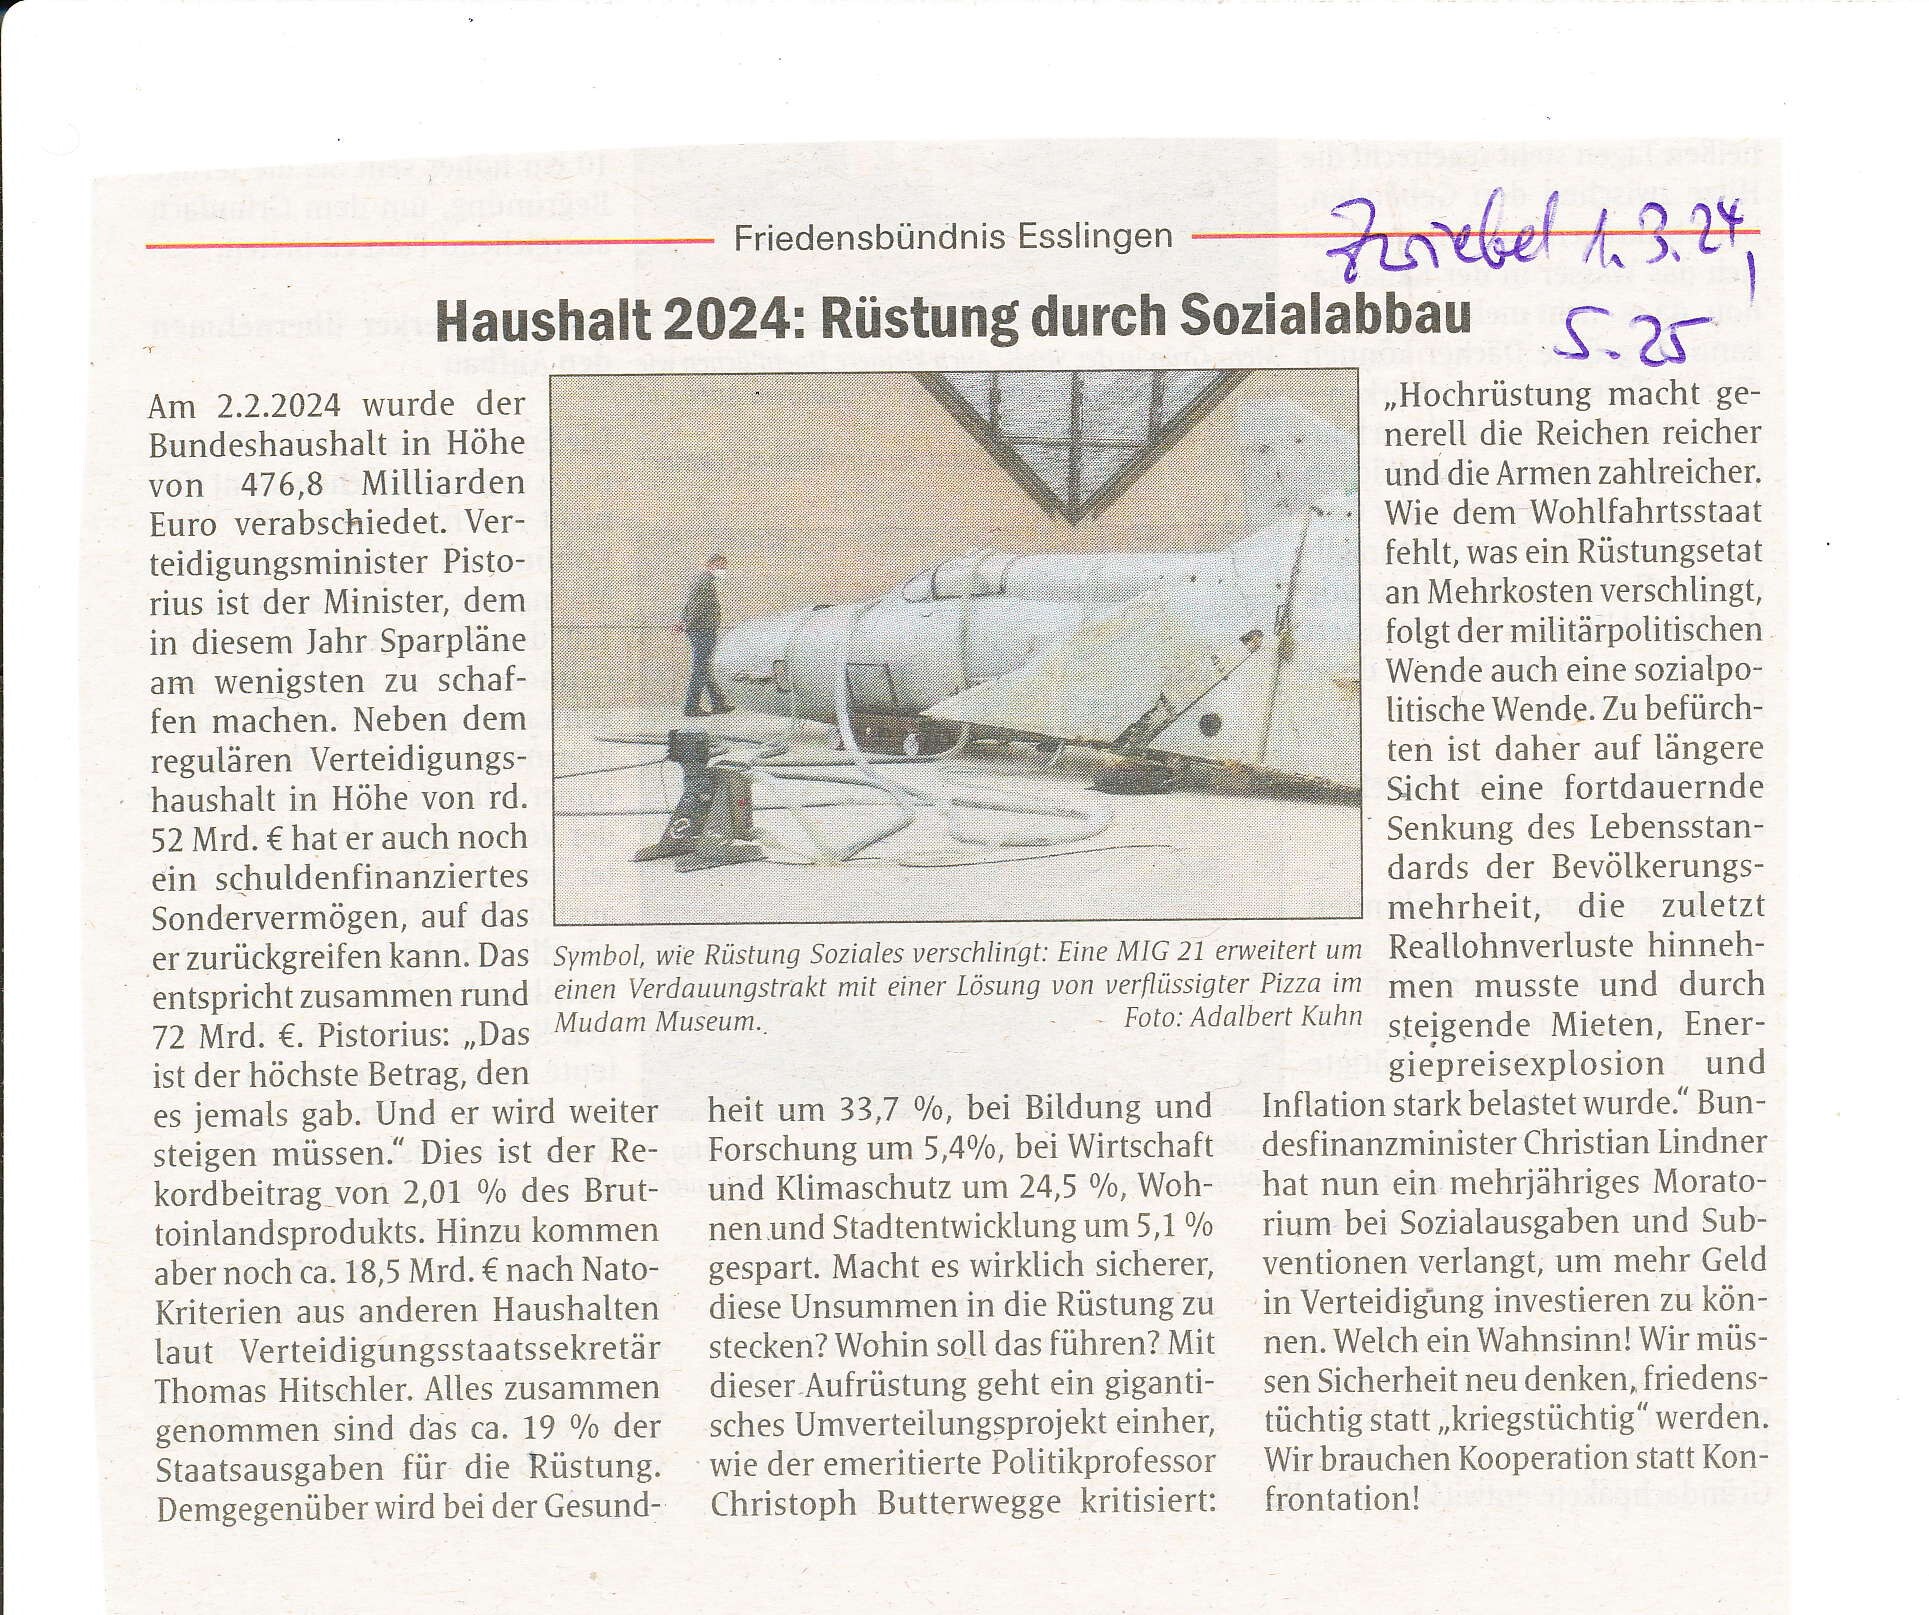 haushalt_2024_-_rustung_durch_sozialabbau_zweibel_2024_03_01_pdf_io.jpg